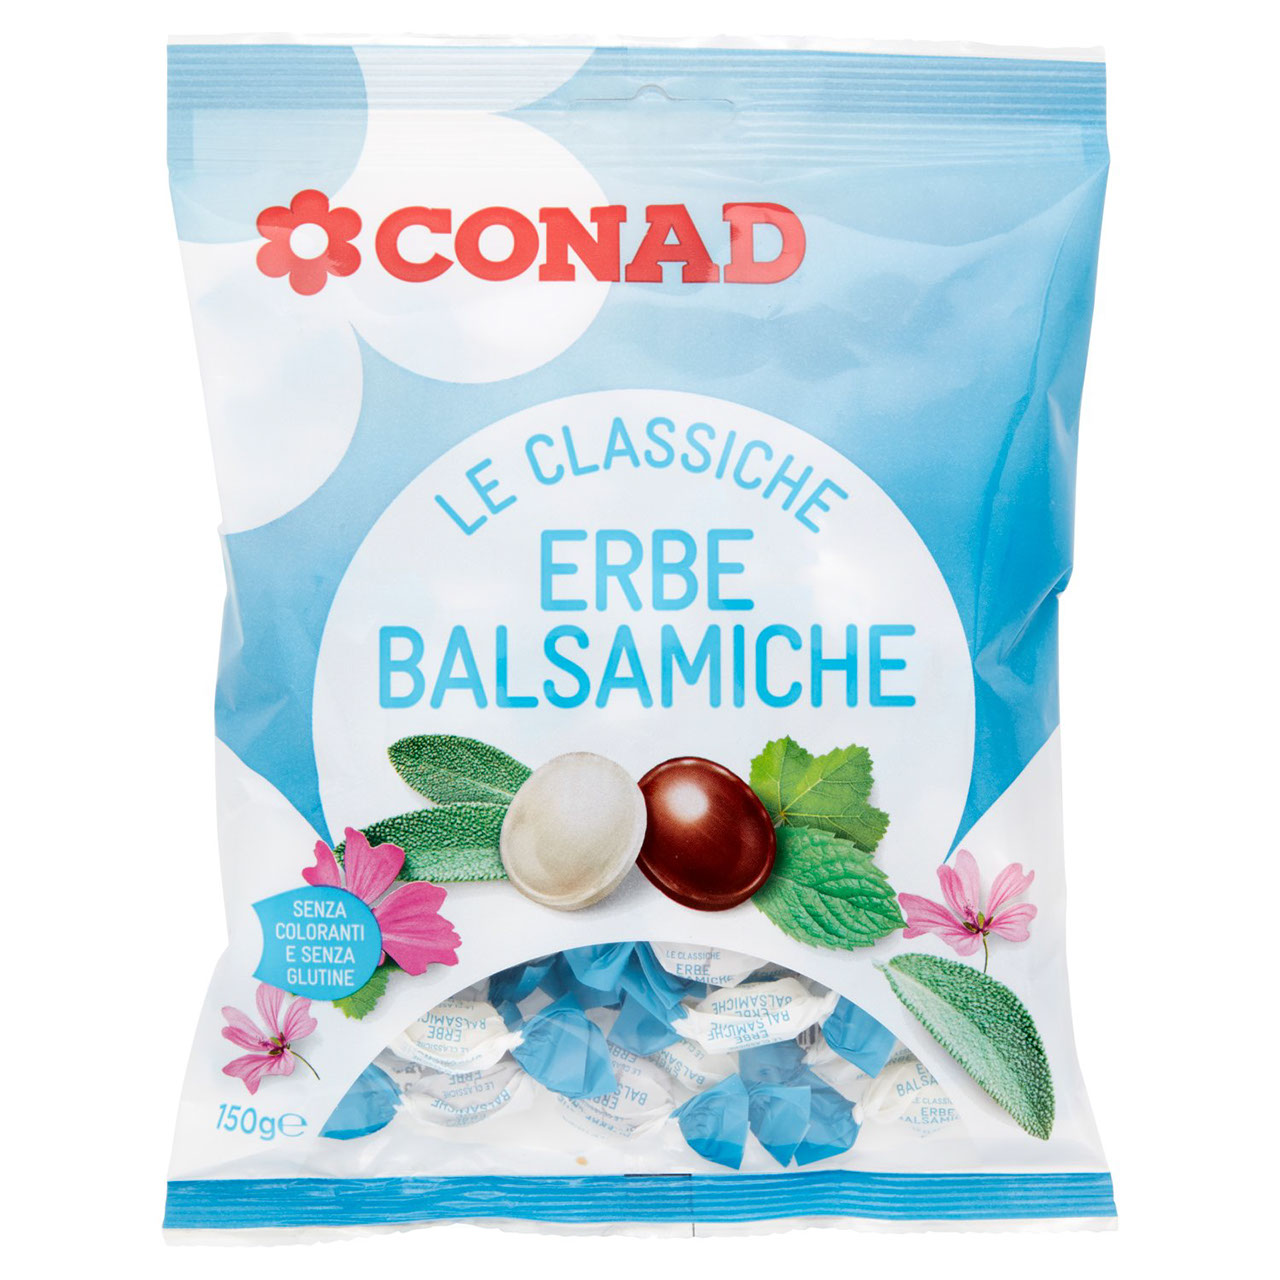 Le Classiche Erbe Balsamiche 150 g Conad online